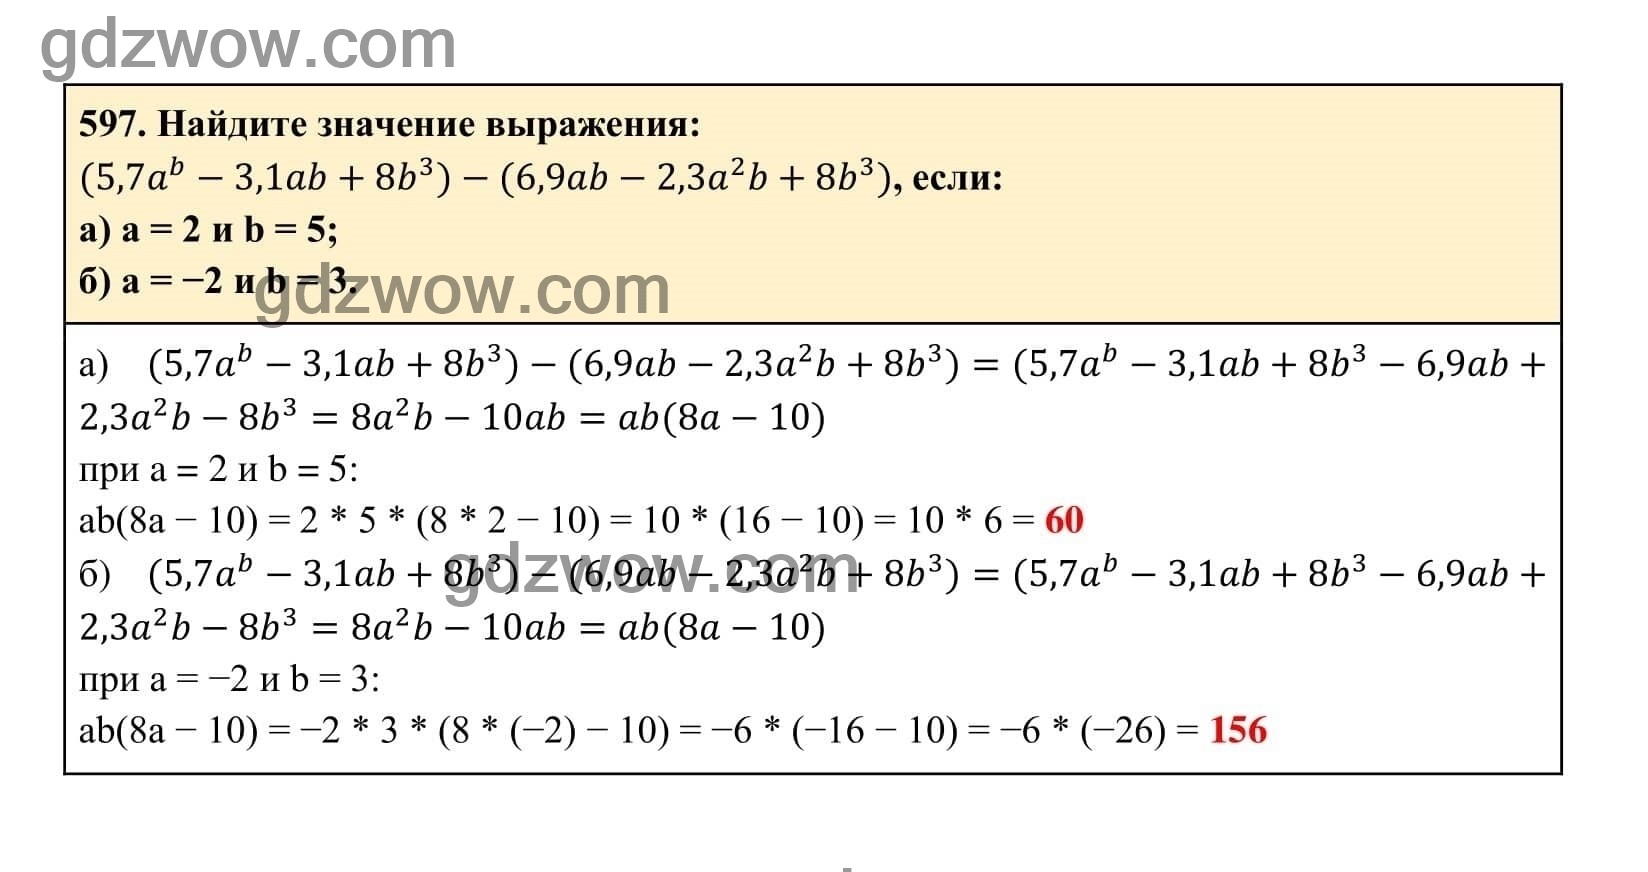 Упражнение 597 - ГДЗ по Алгебре 7 класс Учебник Макарычев (решебник) - GDZwow